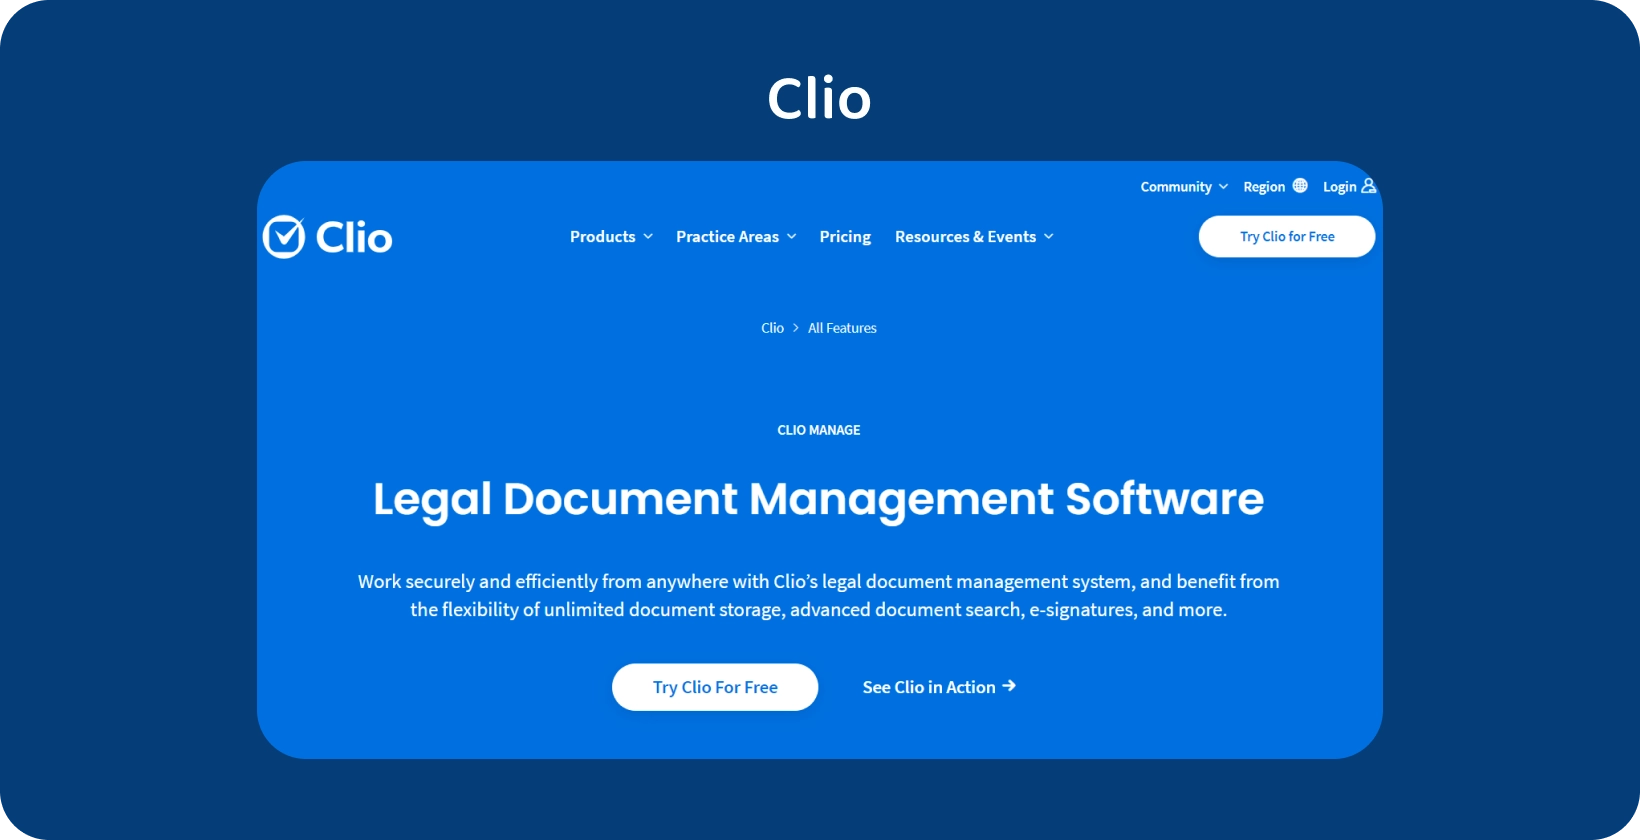 Пользовательский интерфейс Clio демонстрирует программное обеспечение для управления правовыми документами, оптимизирующее организованную обработку документов.